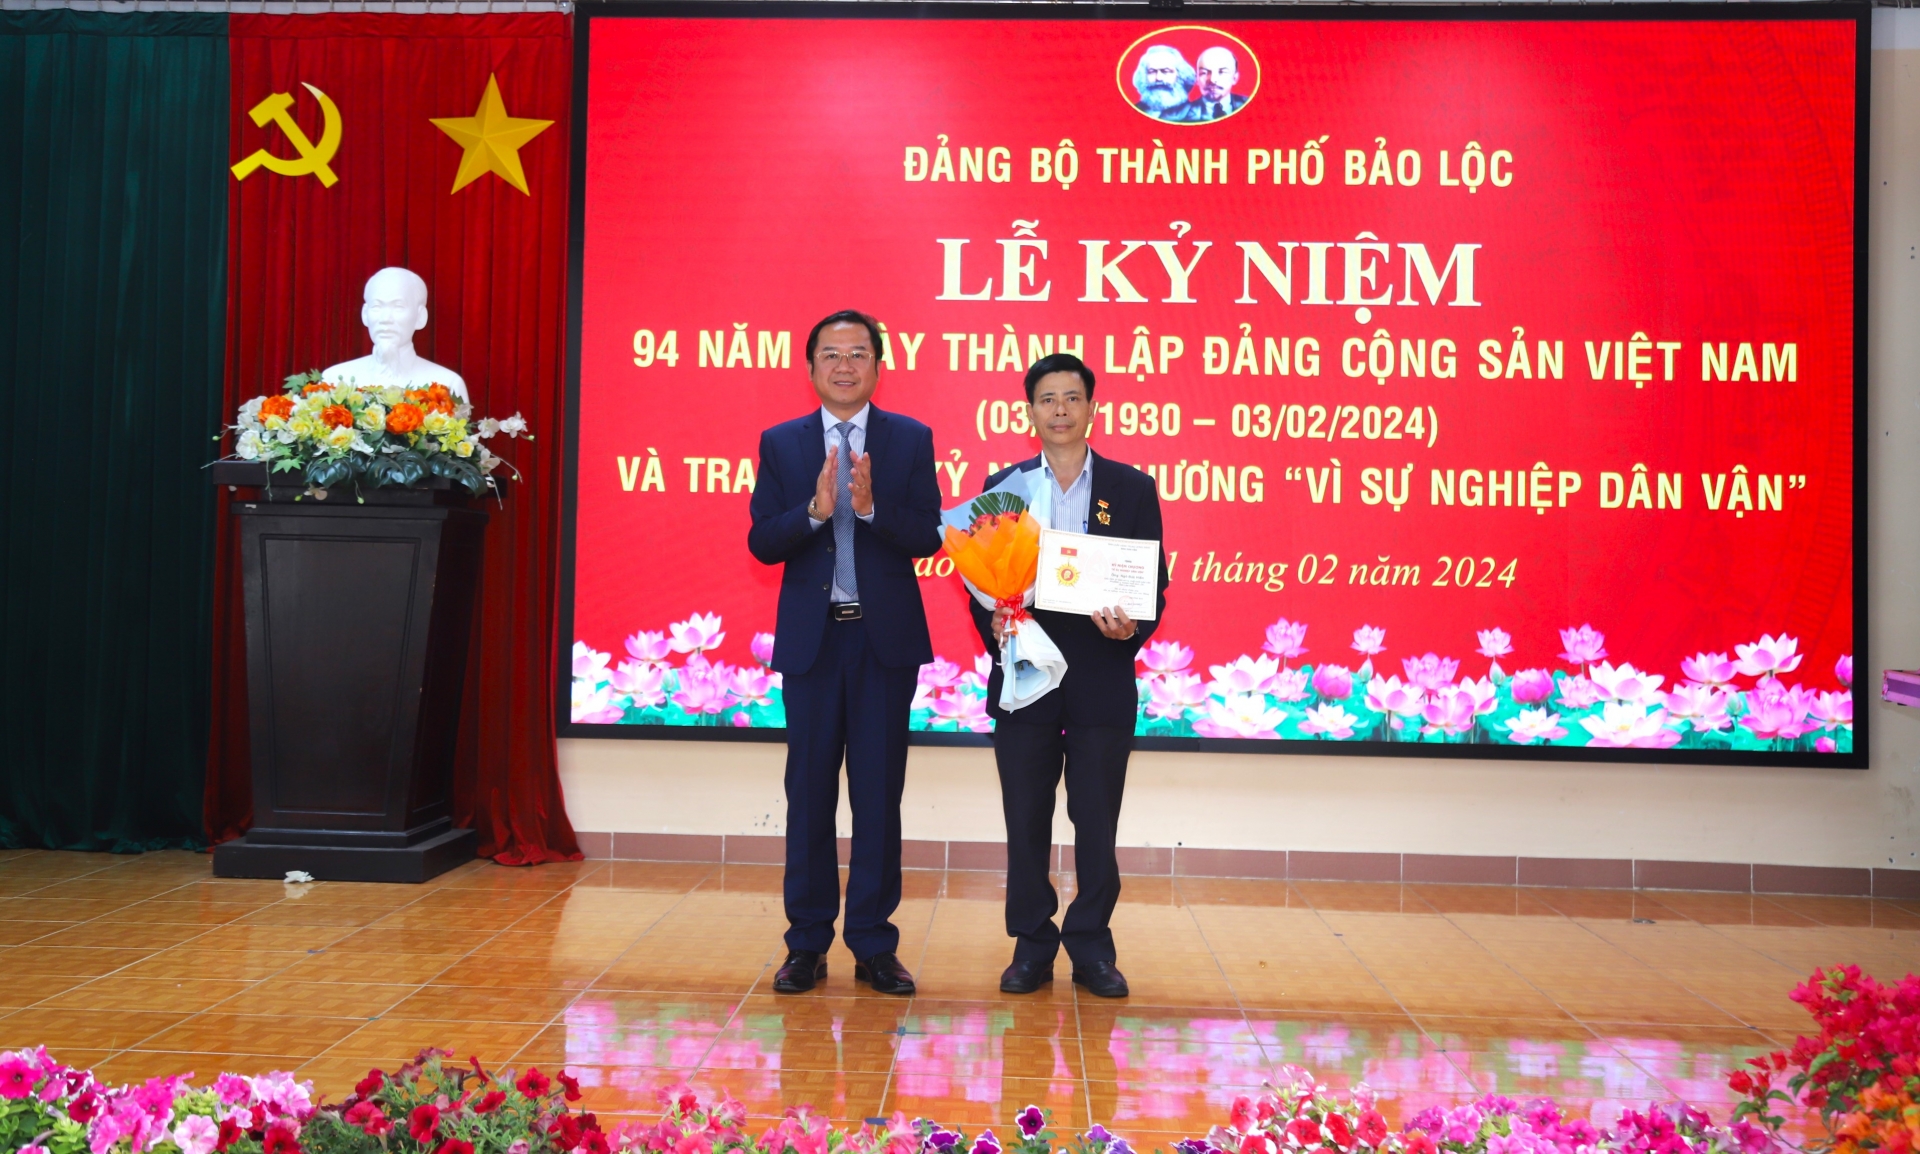 Bí thư Thành ủy Bảo Lộc Tôn Thiện Đồng trao Kỷ niệm chương Vì sự nghiệp Dân vận cho ông Ngô Đức Hiền - Chủ tịch Ủy ban MTTQ Việt Nam Phường 2